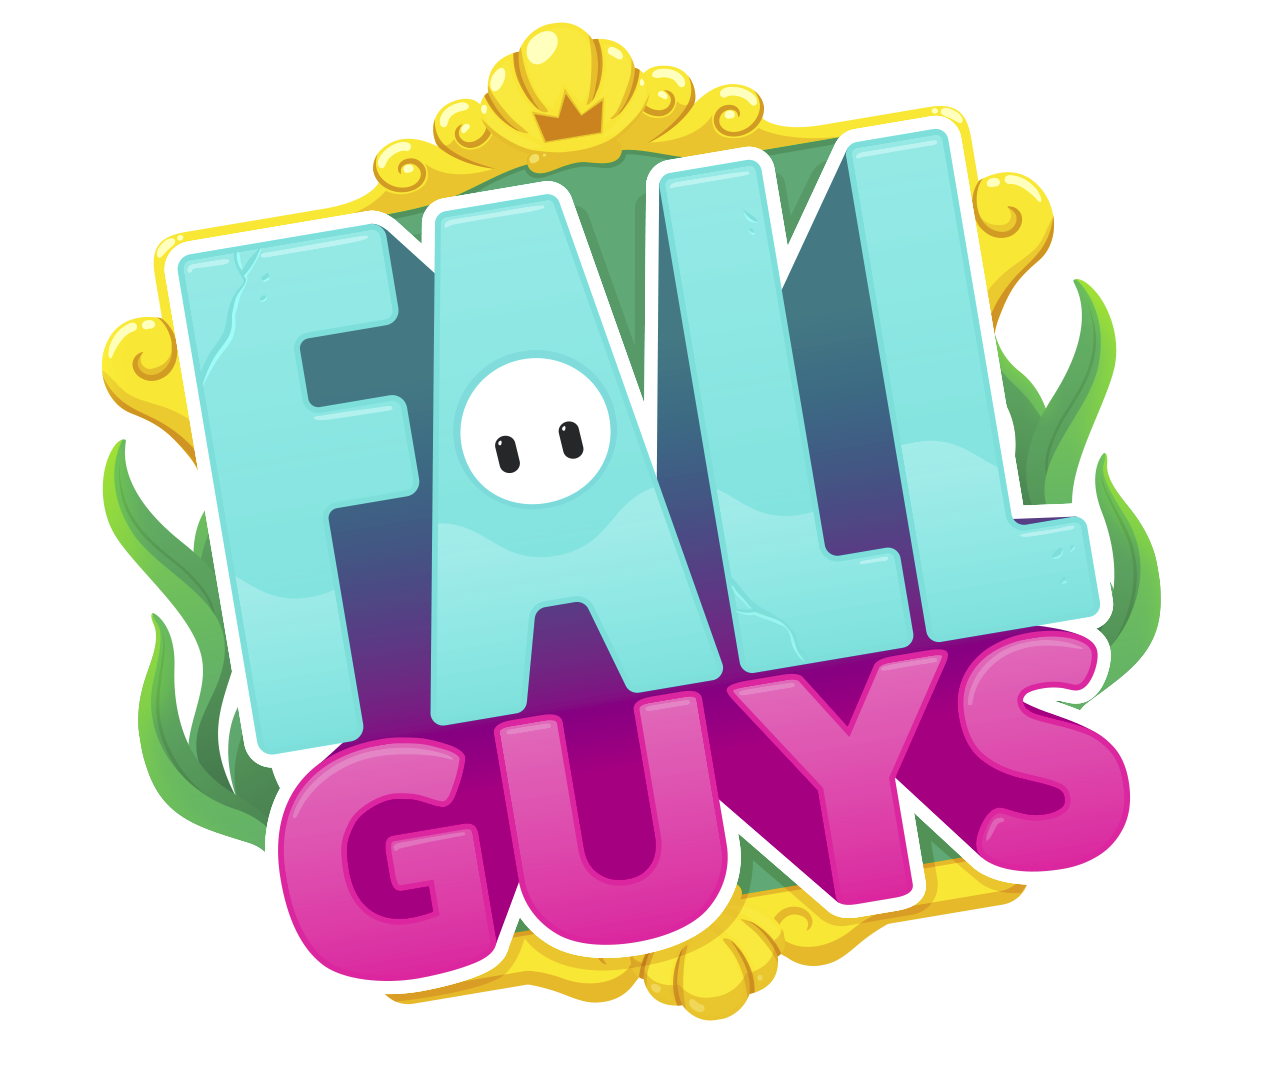 شعار Fall Guys: Ultimate Knockout